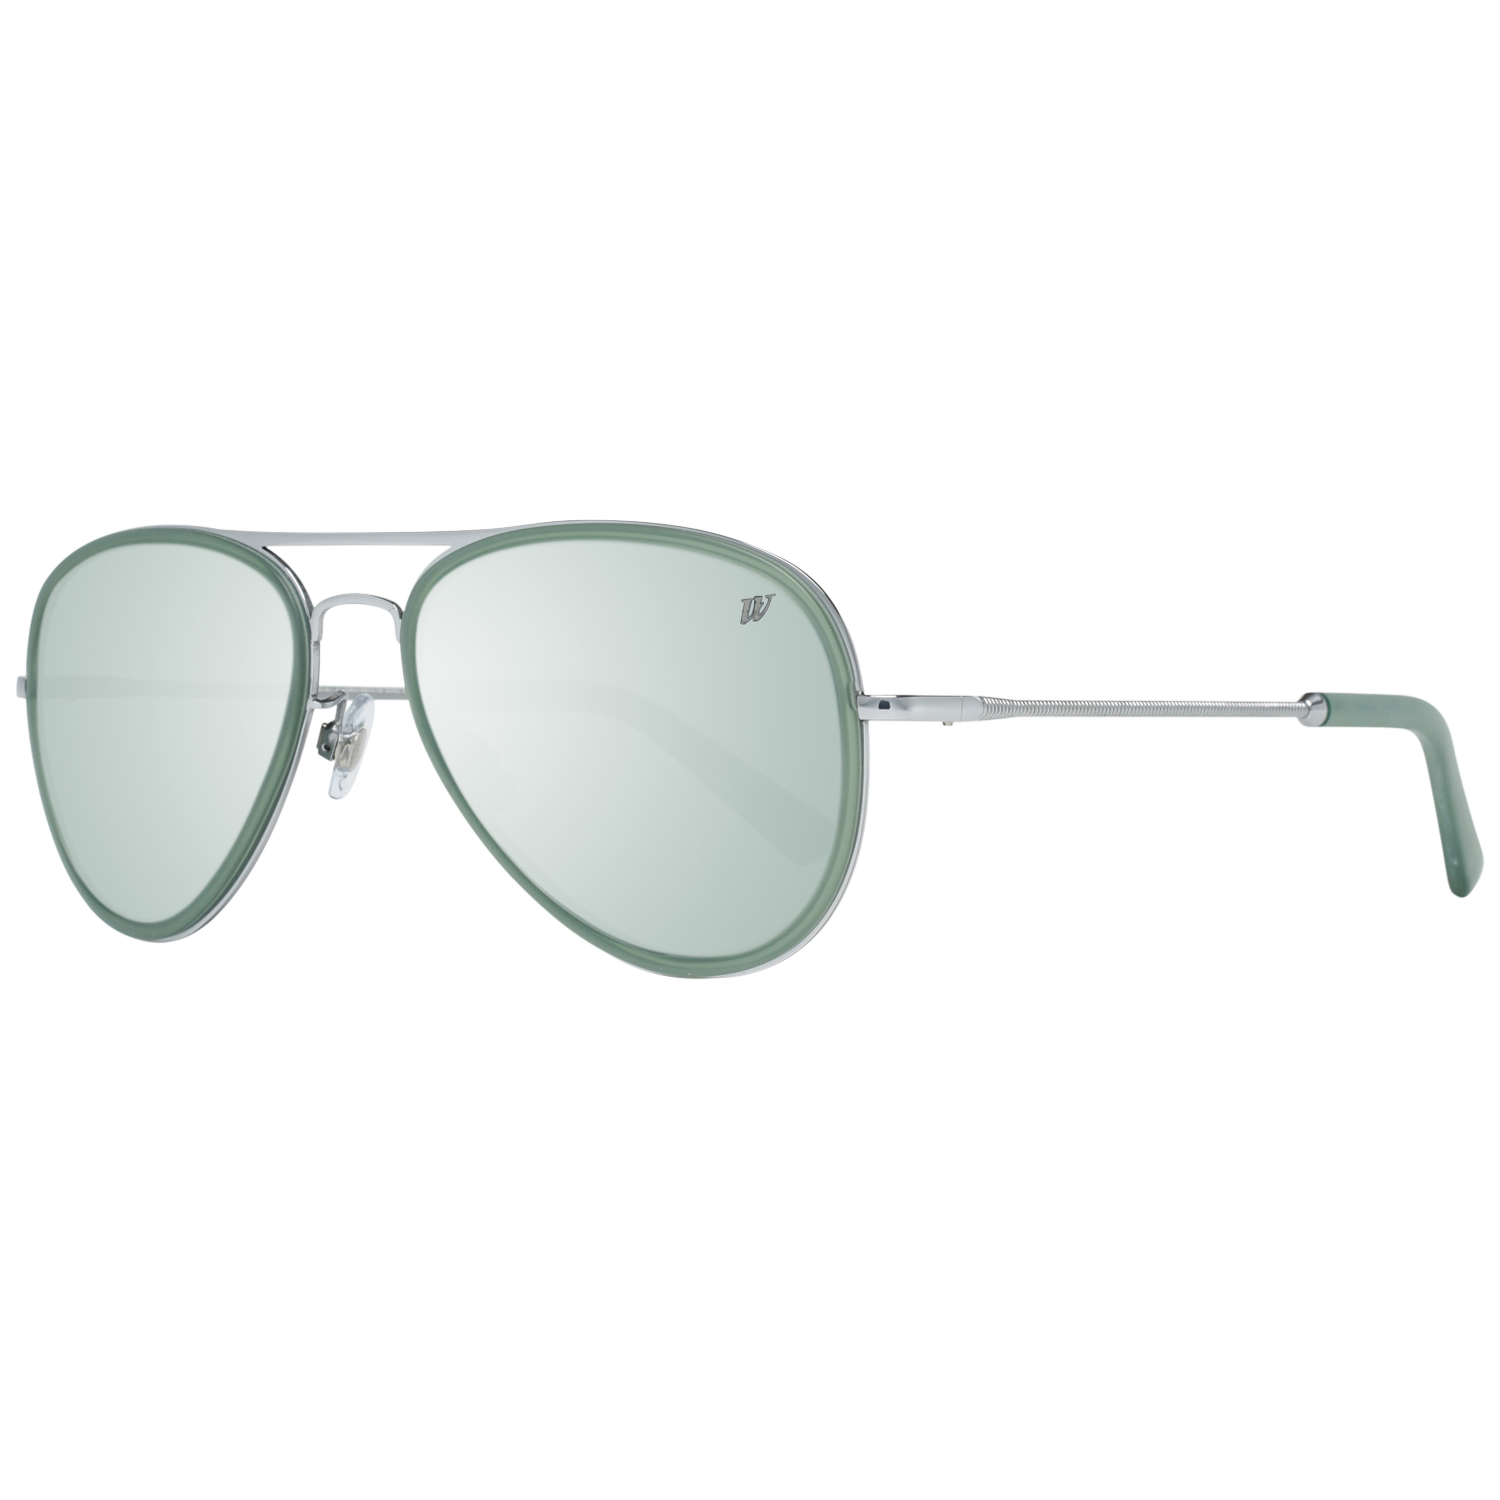 Web Sunglasses WE0145 16B 56